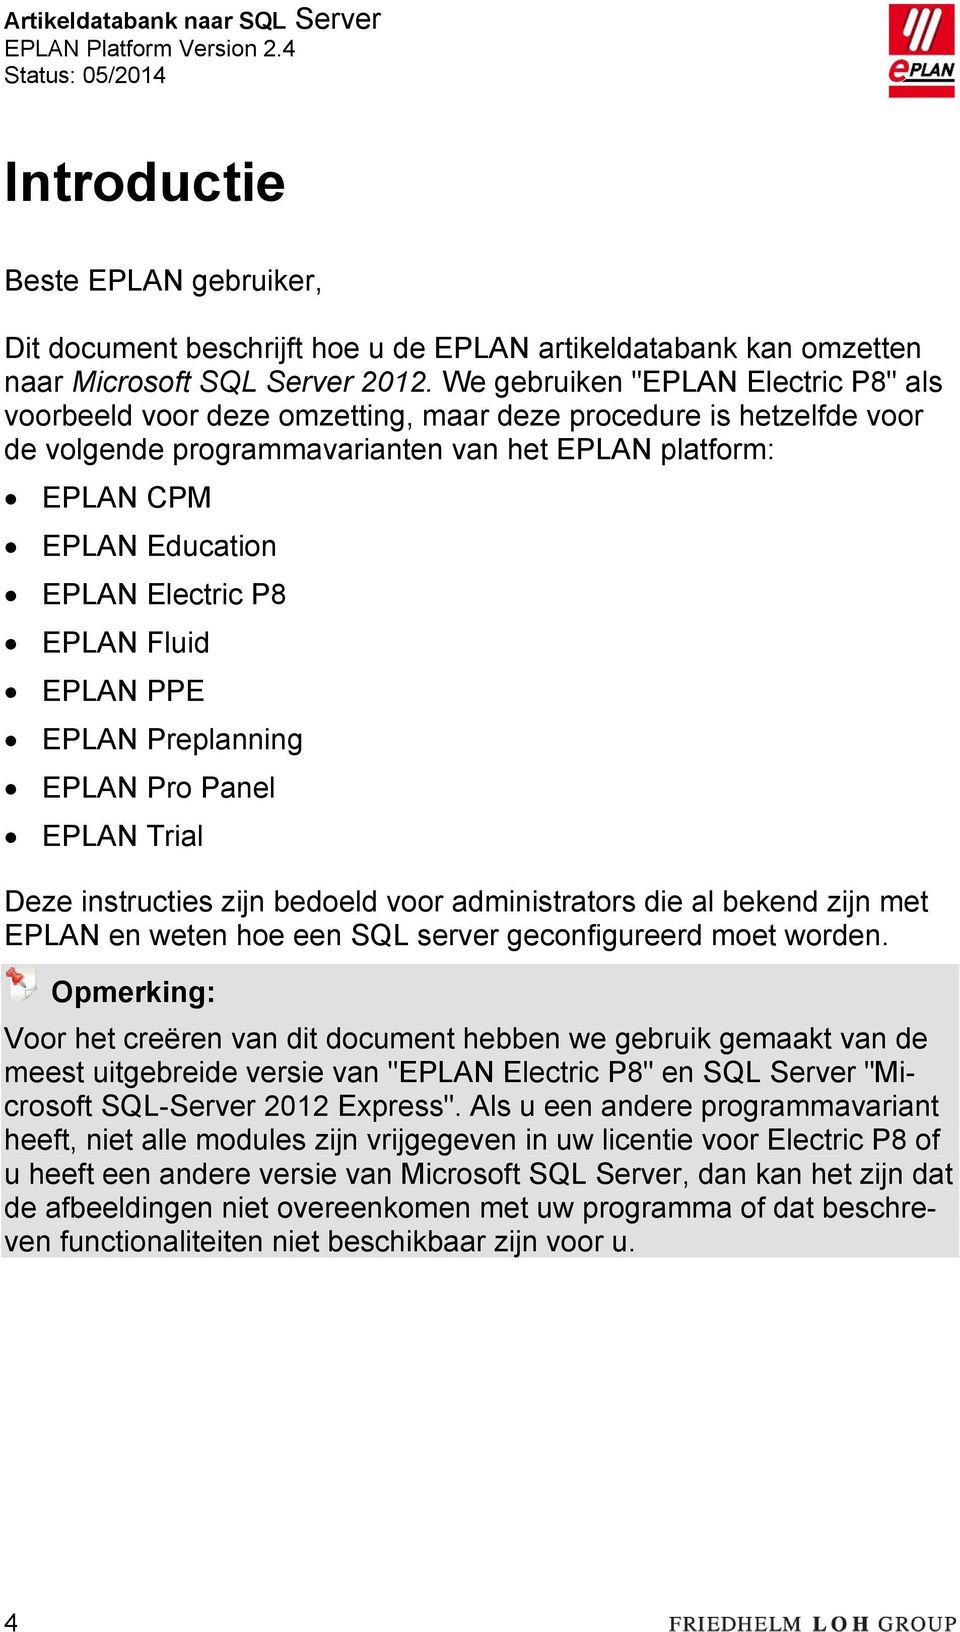 Electric P8 EPLAN Fluid EPLAN PPE EPLAN Preplanning EPLAN Pro Panel EPLAN Trial Deze instructies zijn bedoeld voor administrators die al bekend zijn met EPLAN en weten hoe een SQL server